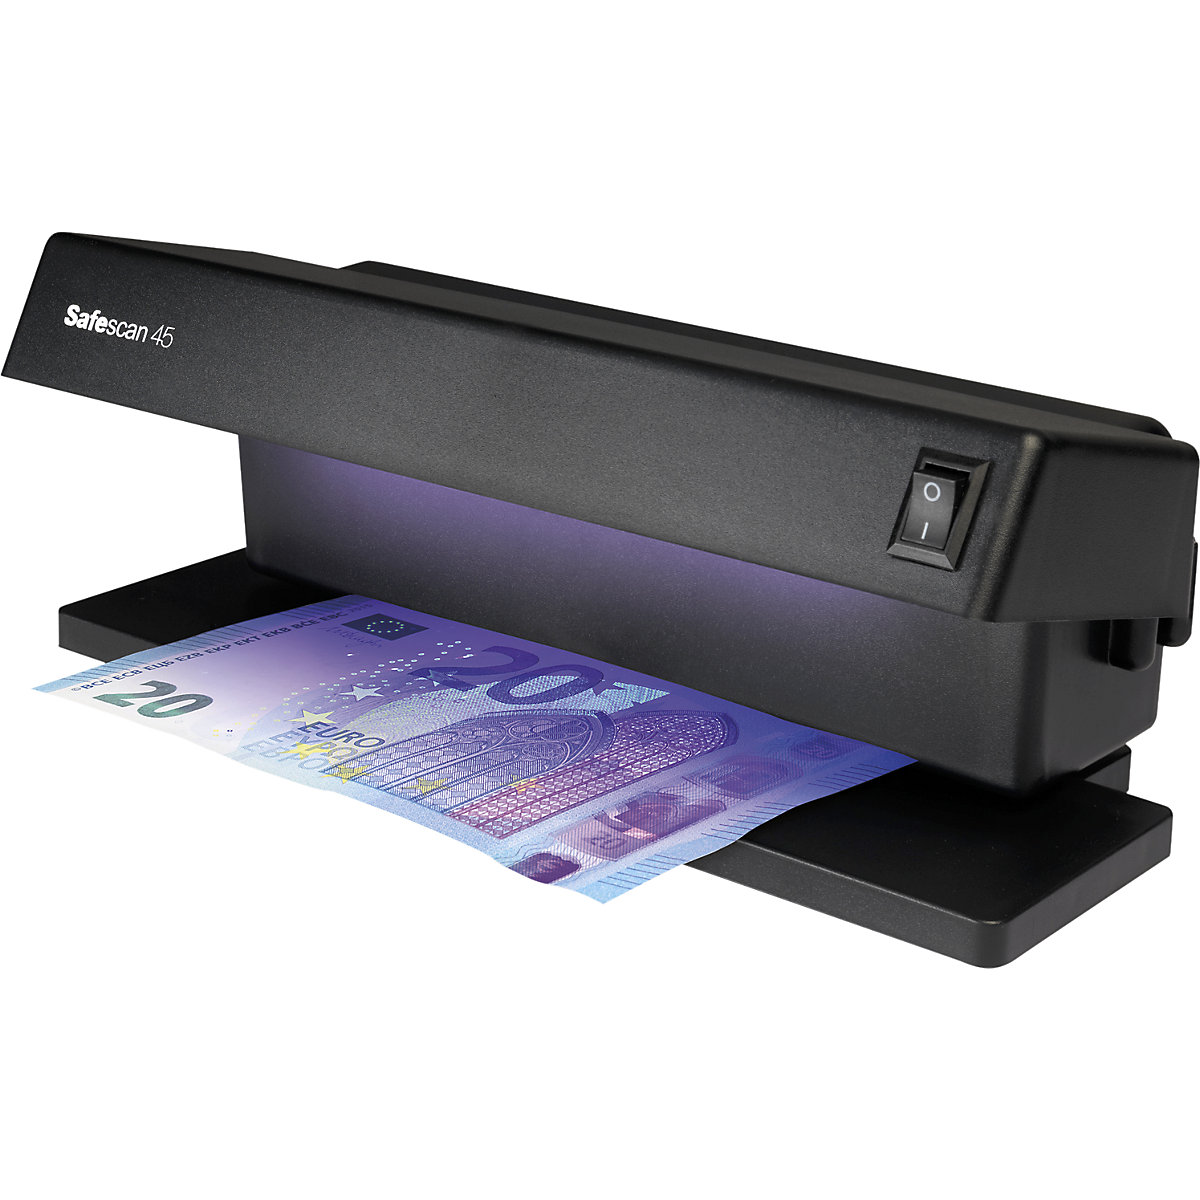 Detector de billetes falsos - Safescan